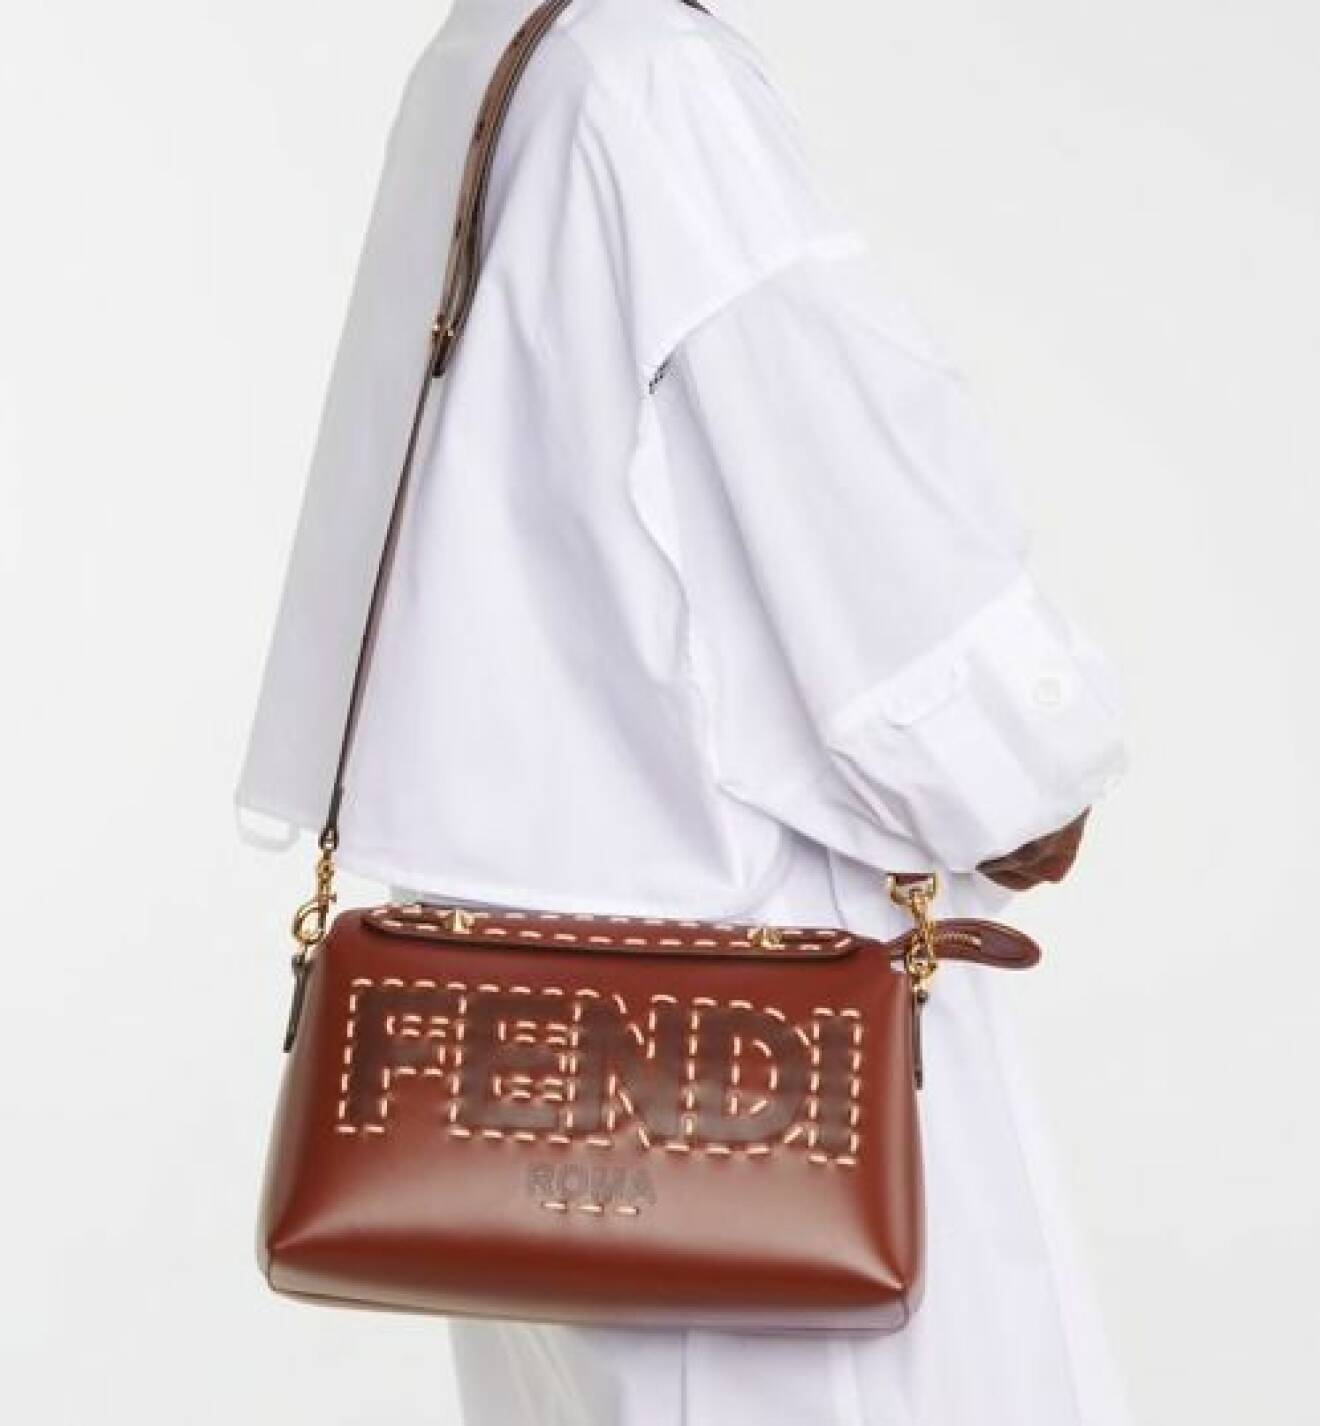 Konjaksbrun skinnväska med axelrem och stor broderad logga på. Modellen heter "By the war Medium bag". Skinnväska från Fendi.